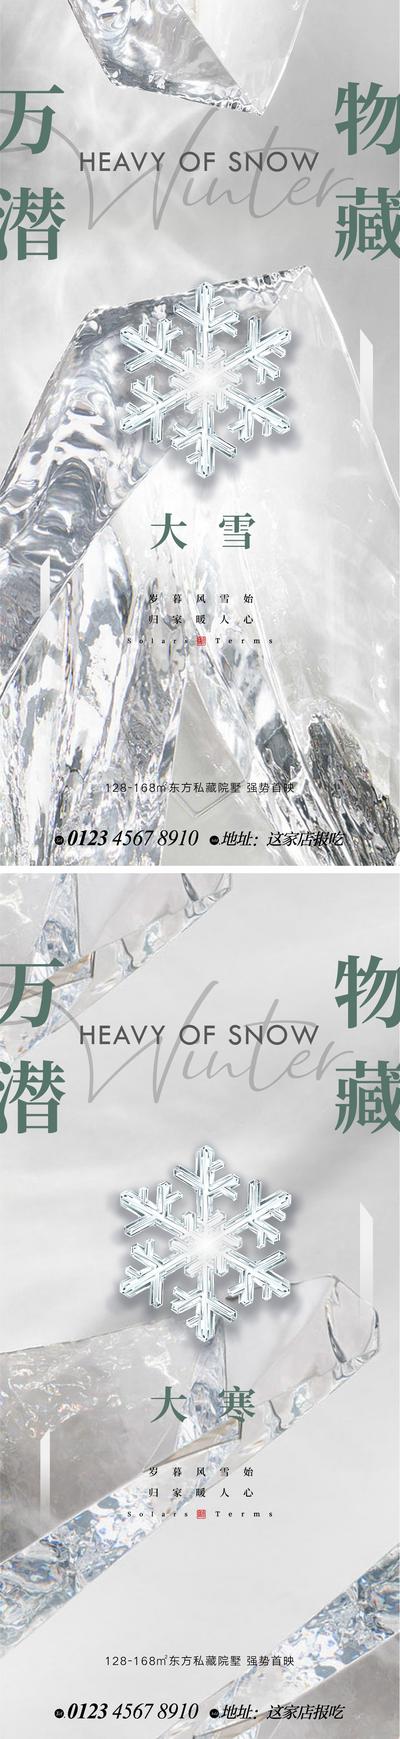 【南门网】广告 海报 系列 大雪 冬至 小寒 大寒 雪花 肌理 背景 底纹 大气 抽象 纹理 悬念 精致 微信